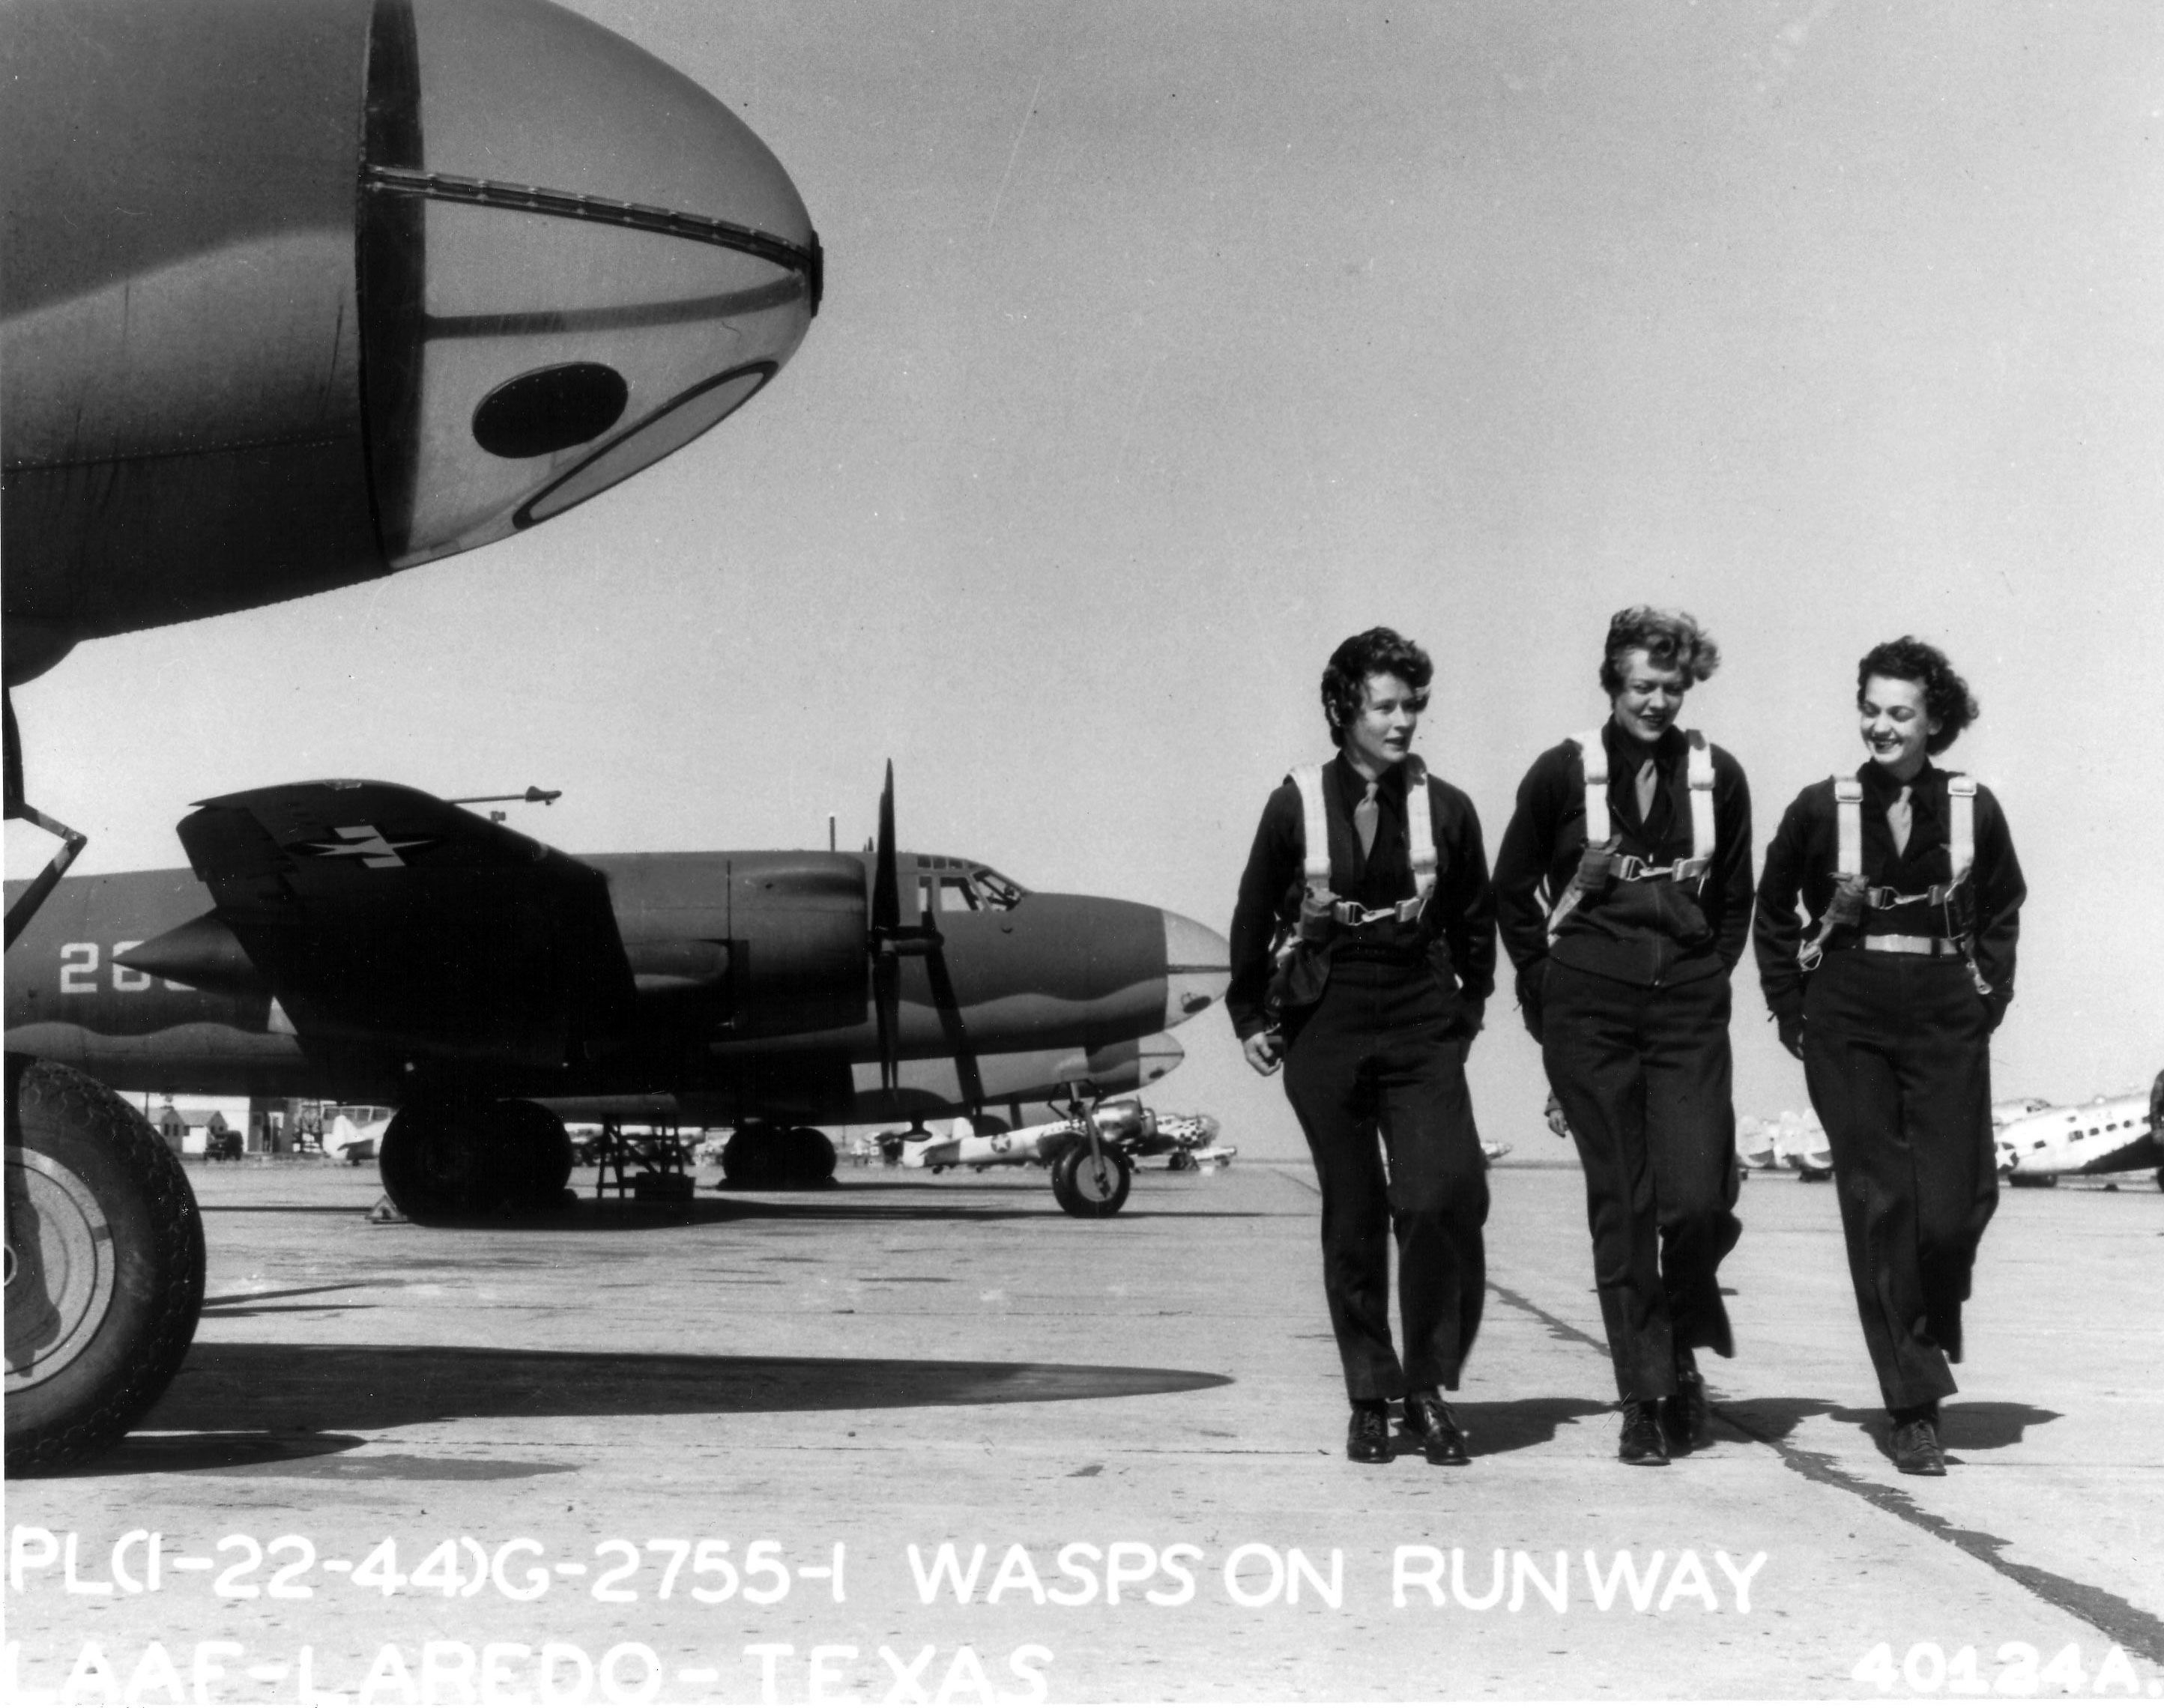 WASP pilots at Laredo Army Air Force Base, Texas, United States, 22 Jan 1944; no